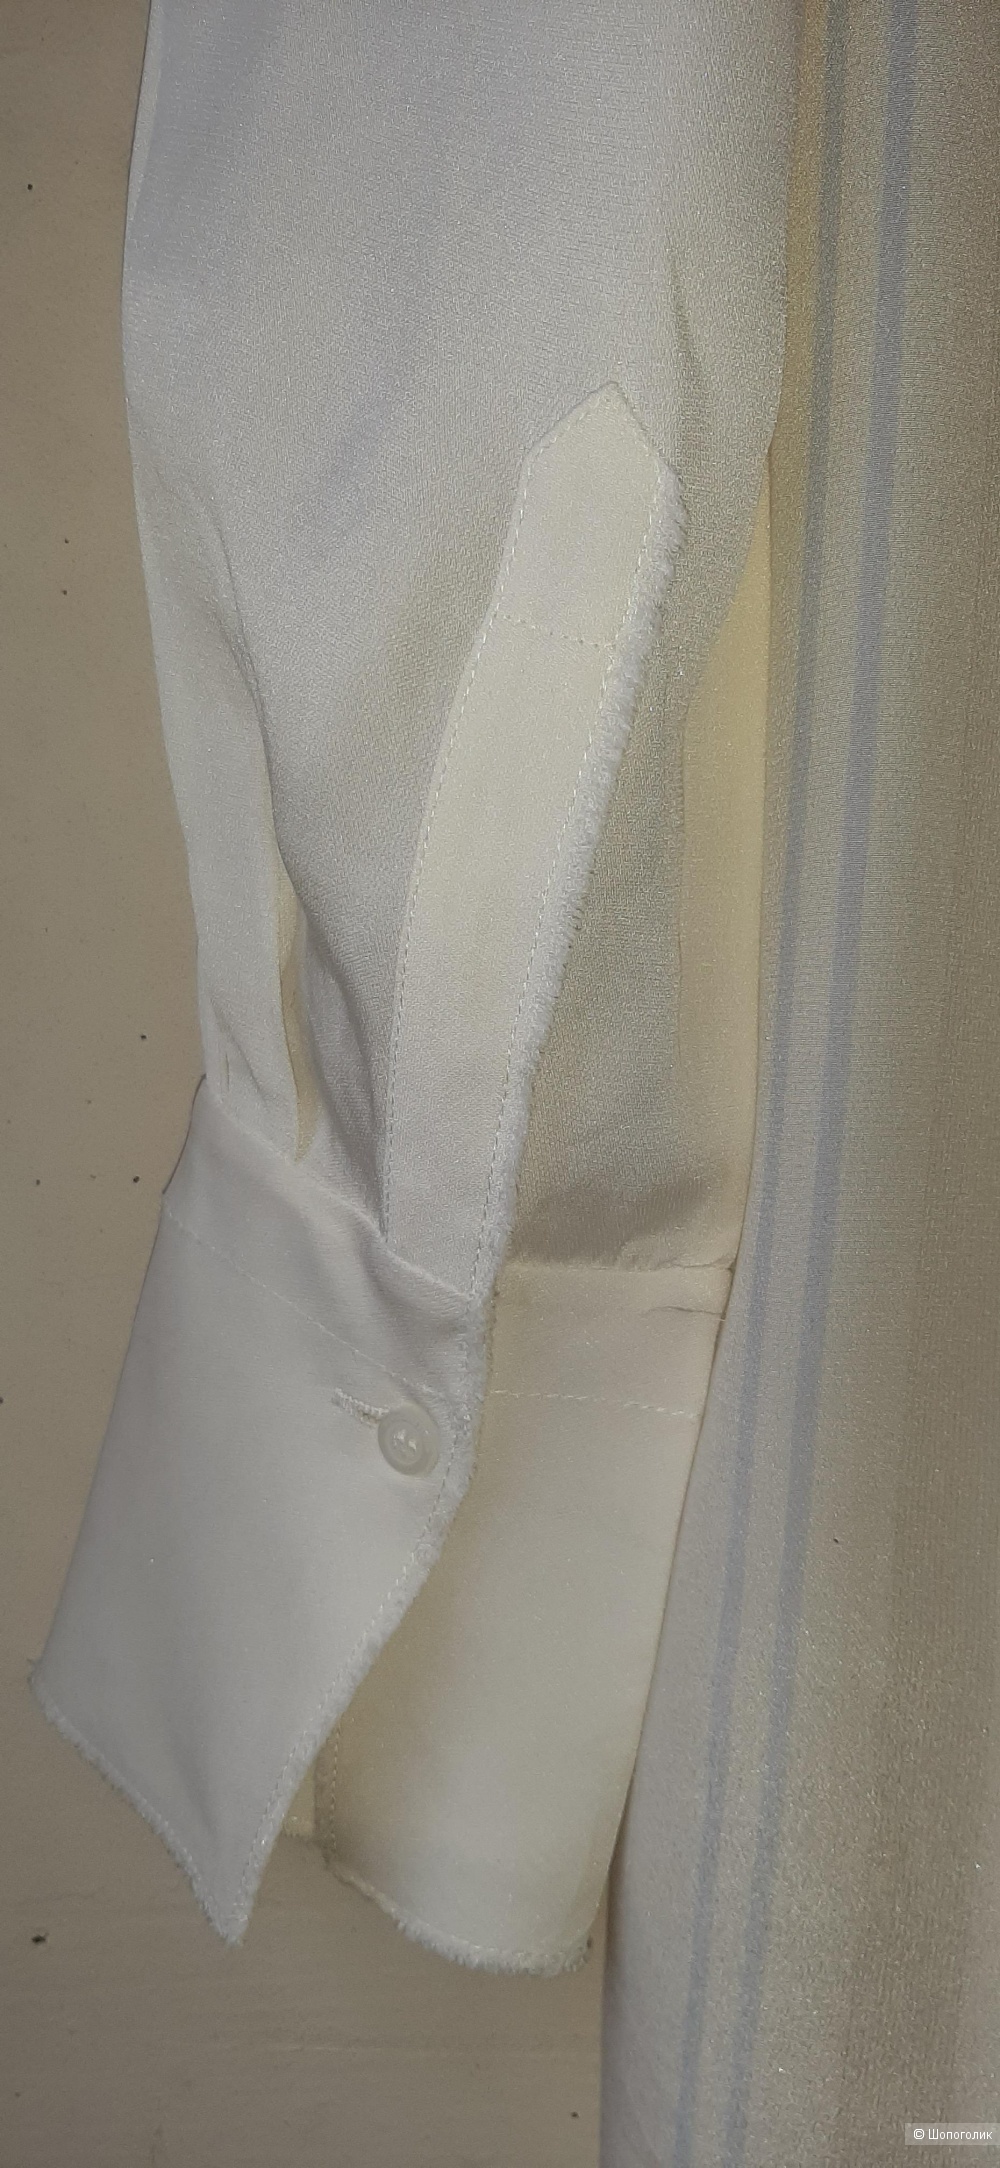 Шелковая блуза- туника By Malen Birger, 36 на 42